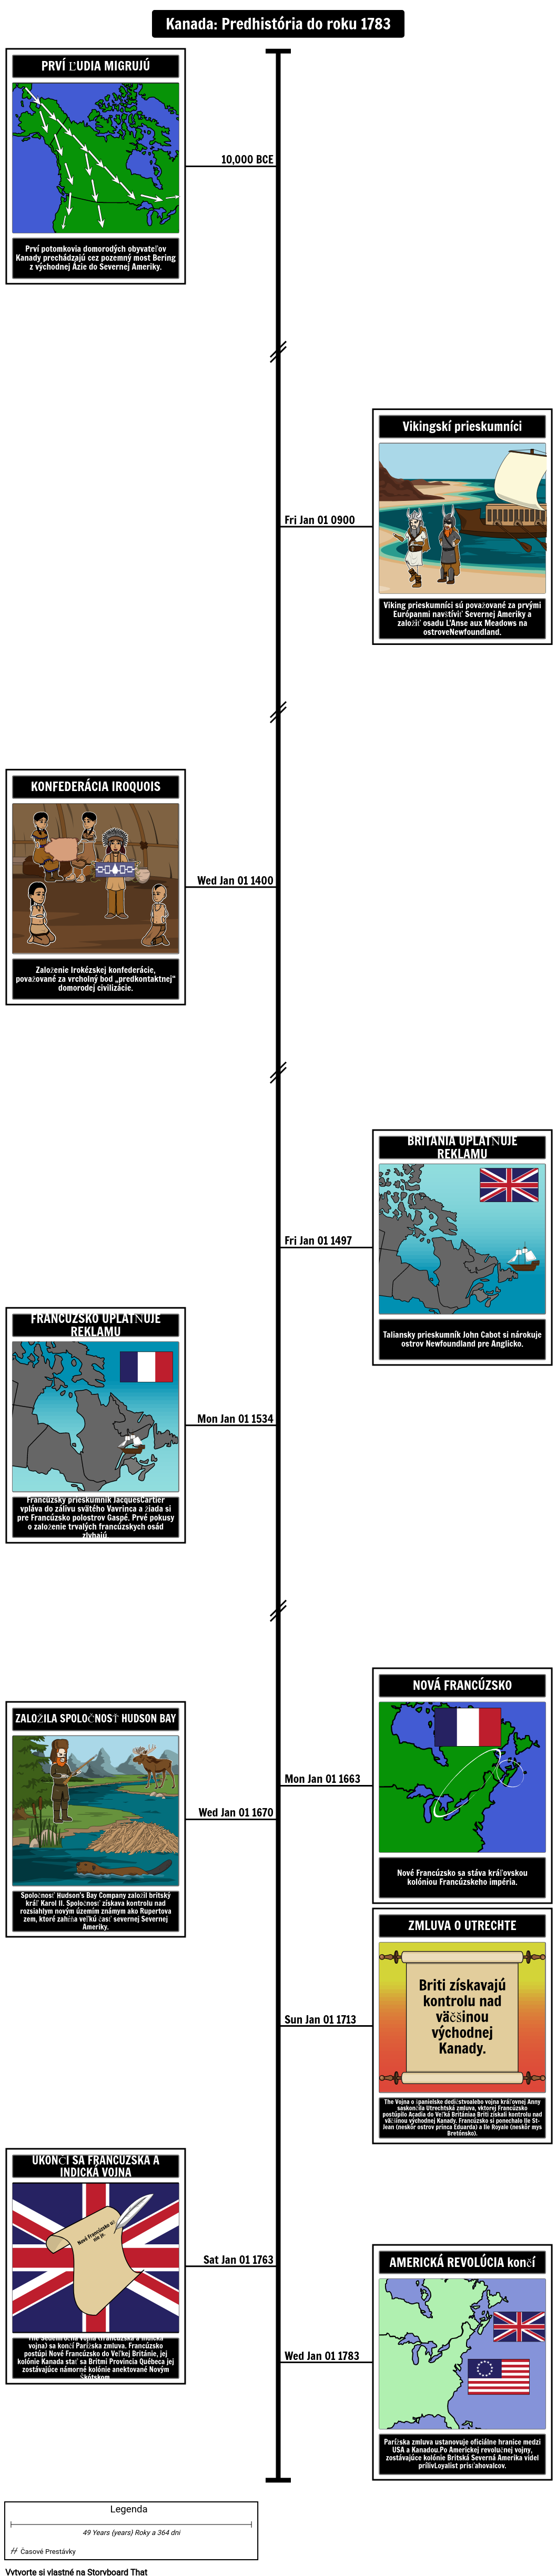 Časová os kanadskej histórie, predhistória do roku 1783